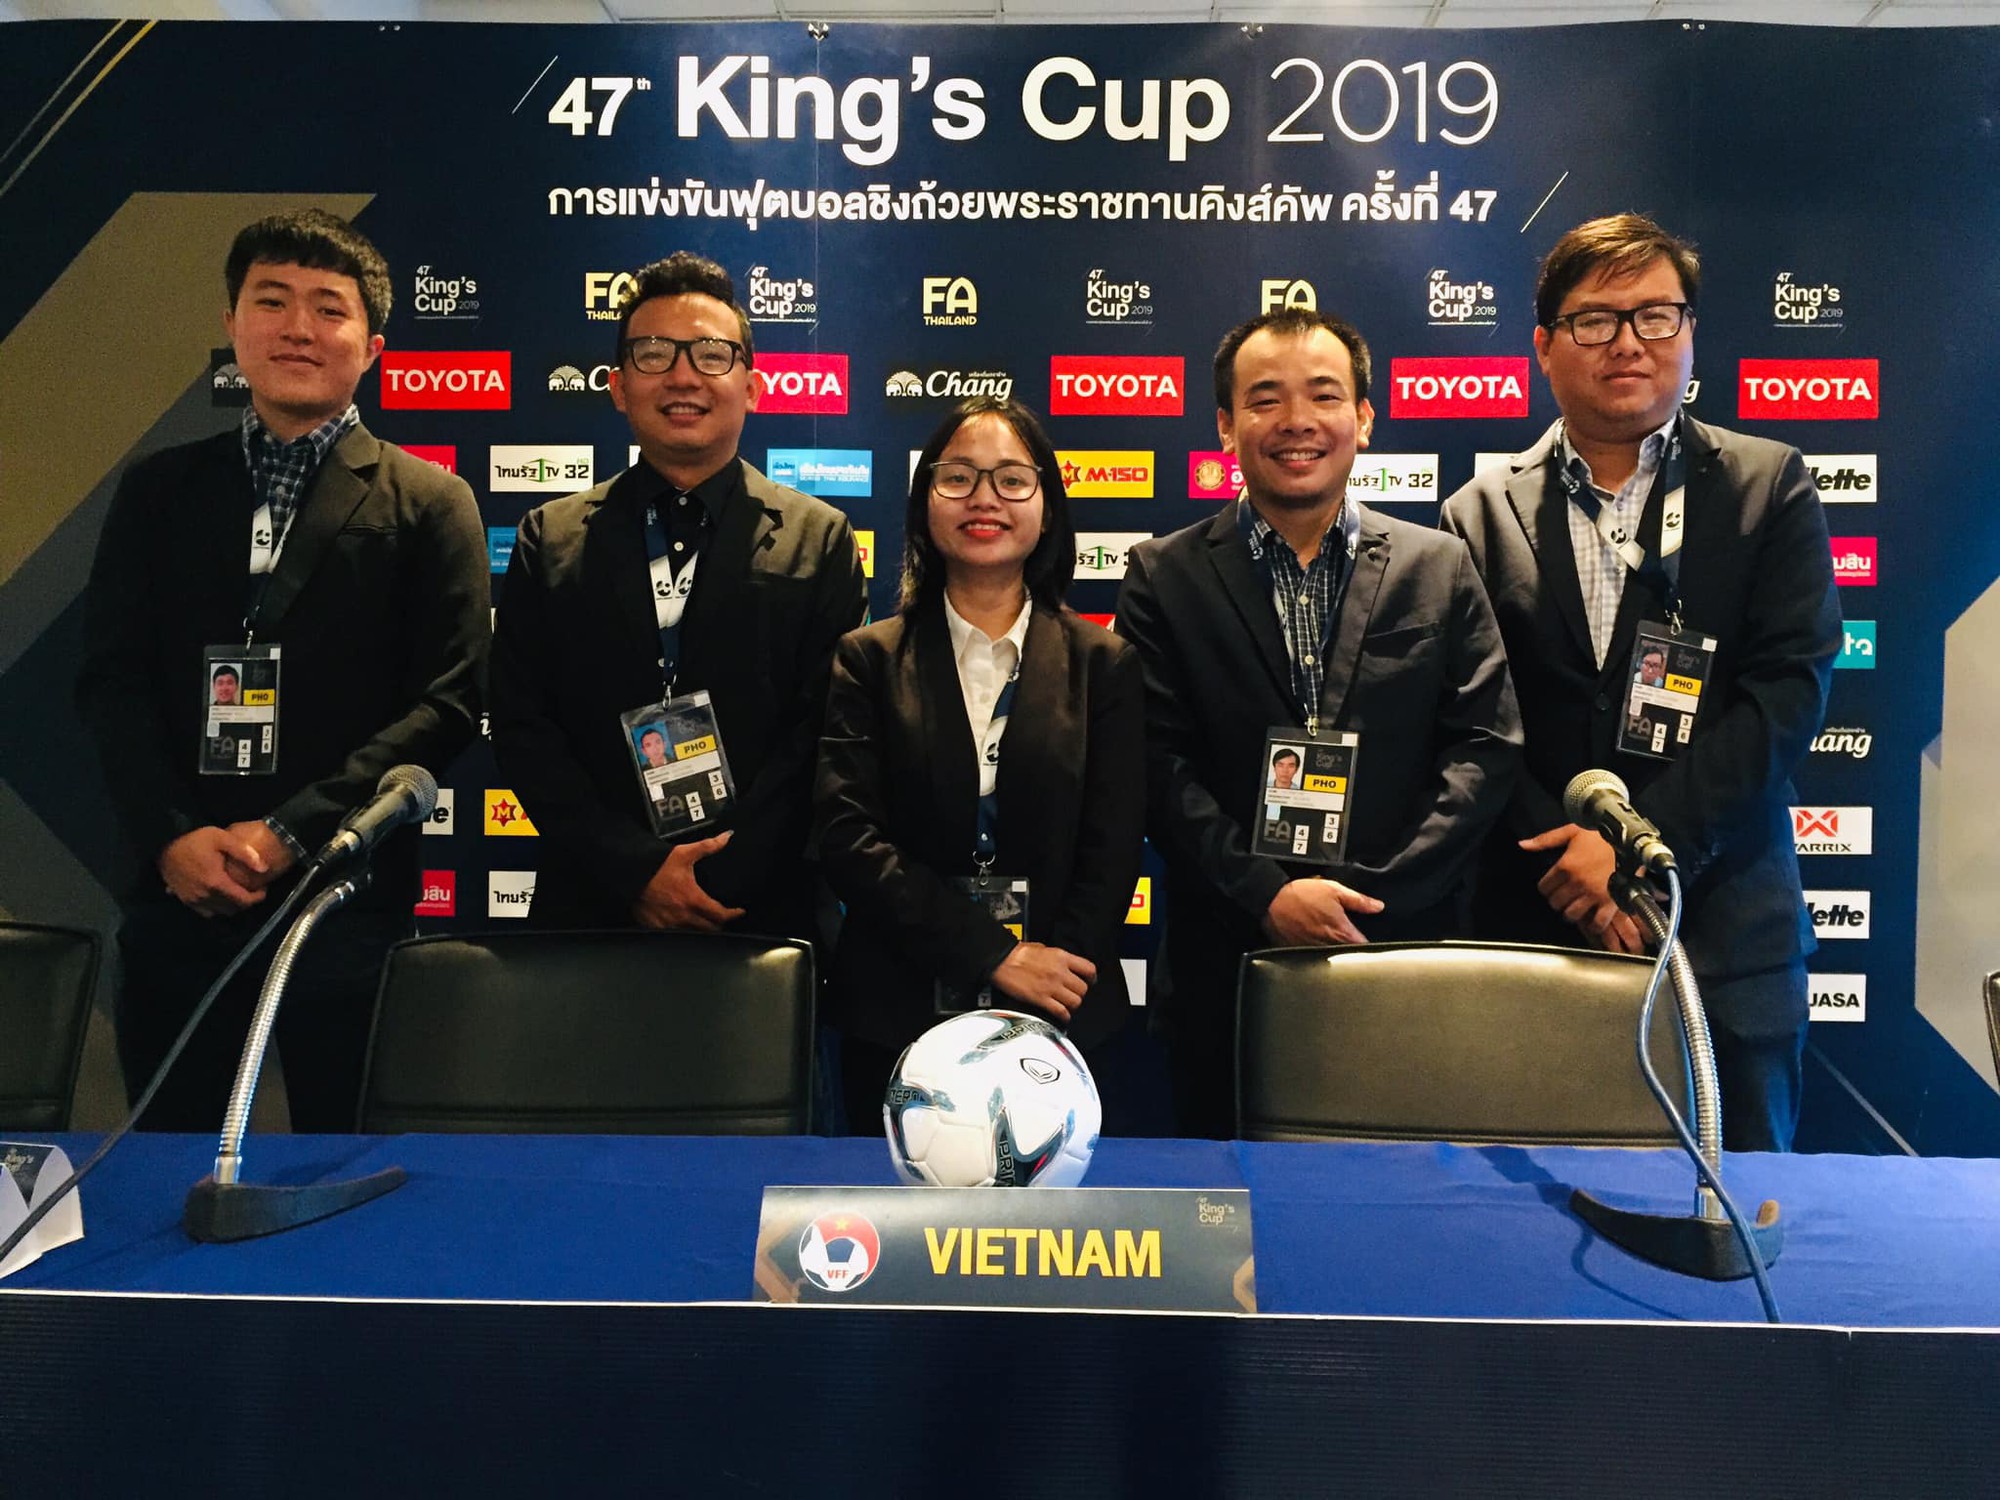 Vì quy định đặc biệt, phóng viên rủ nhau diện suit lịch lãm tới tác nghiệp trận Việt Nam đá chung kết Kings Cup 2019 - Ảnh 1.